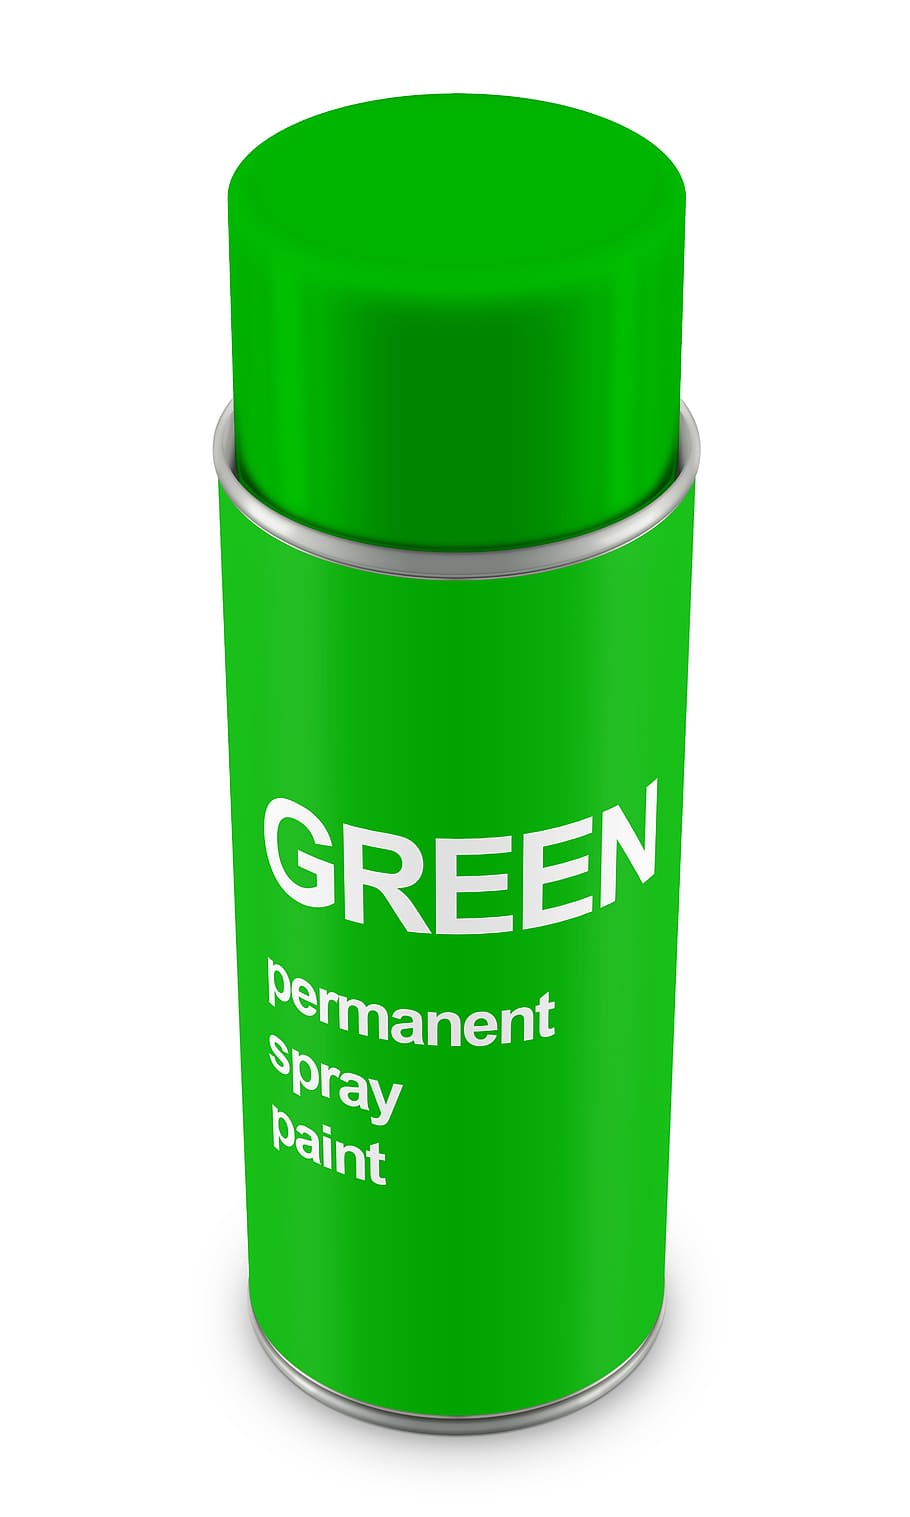 スプレー缶, 塗料, スズ, エアゾール, ボトル, 容器, キャニスター, 芸術的, 緑, 緑の色